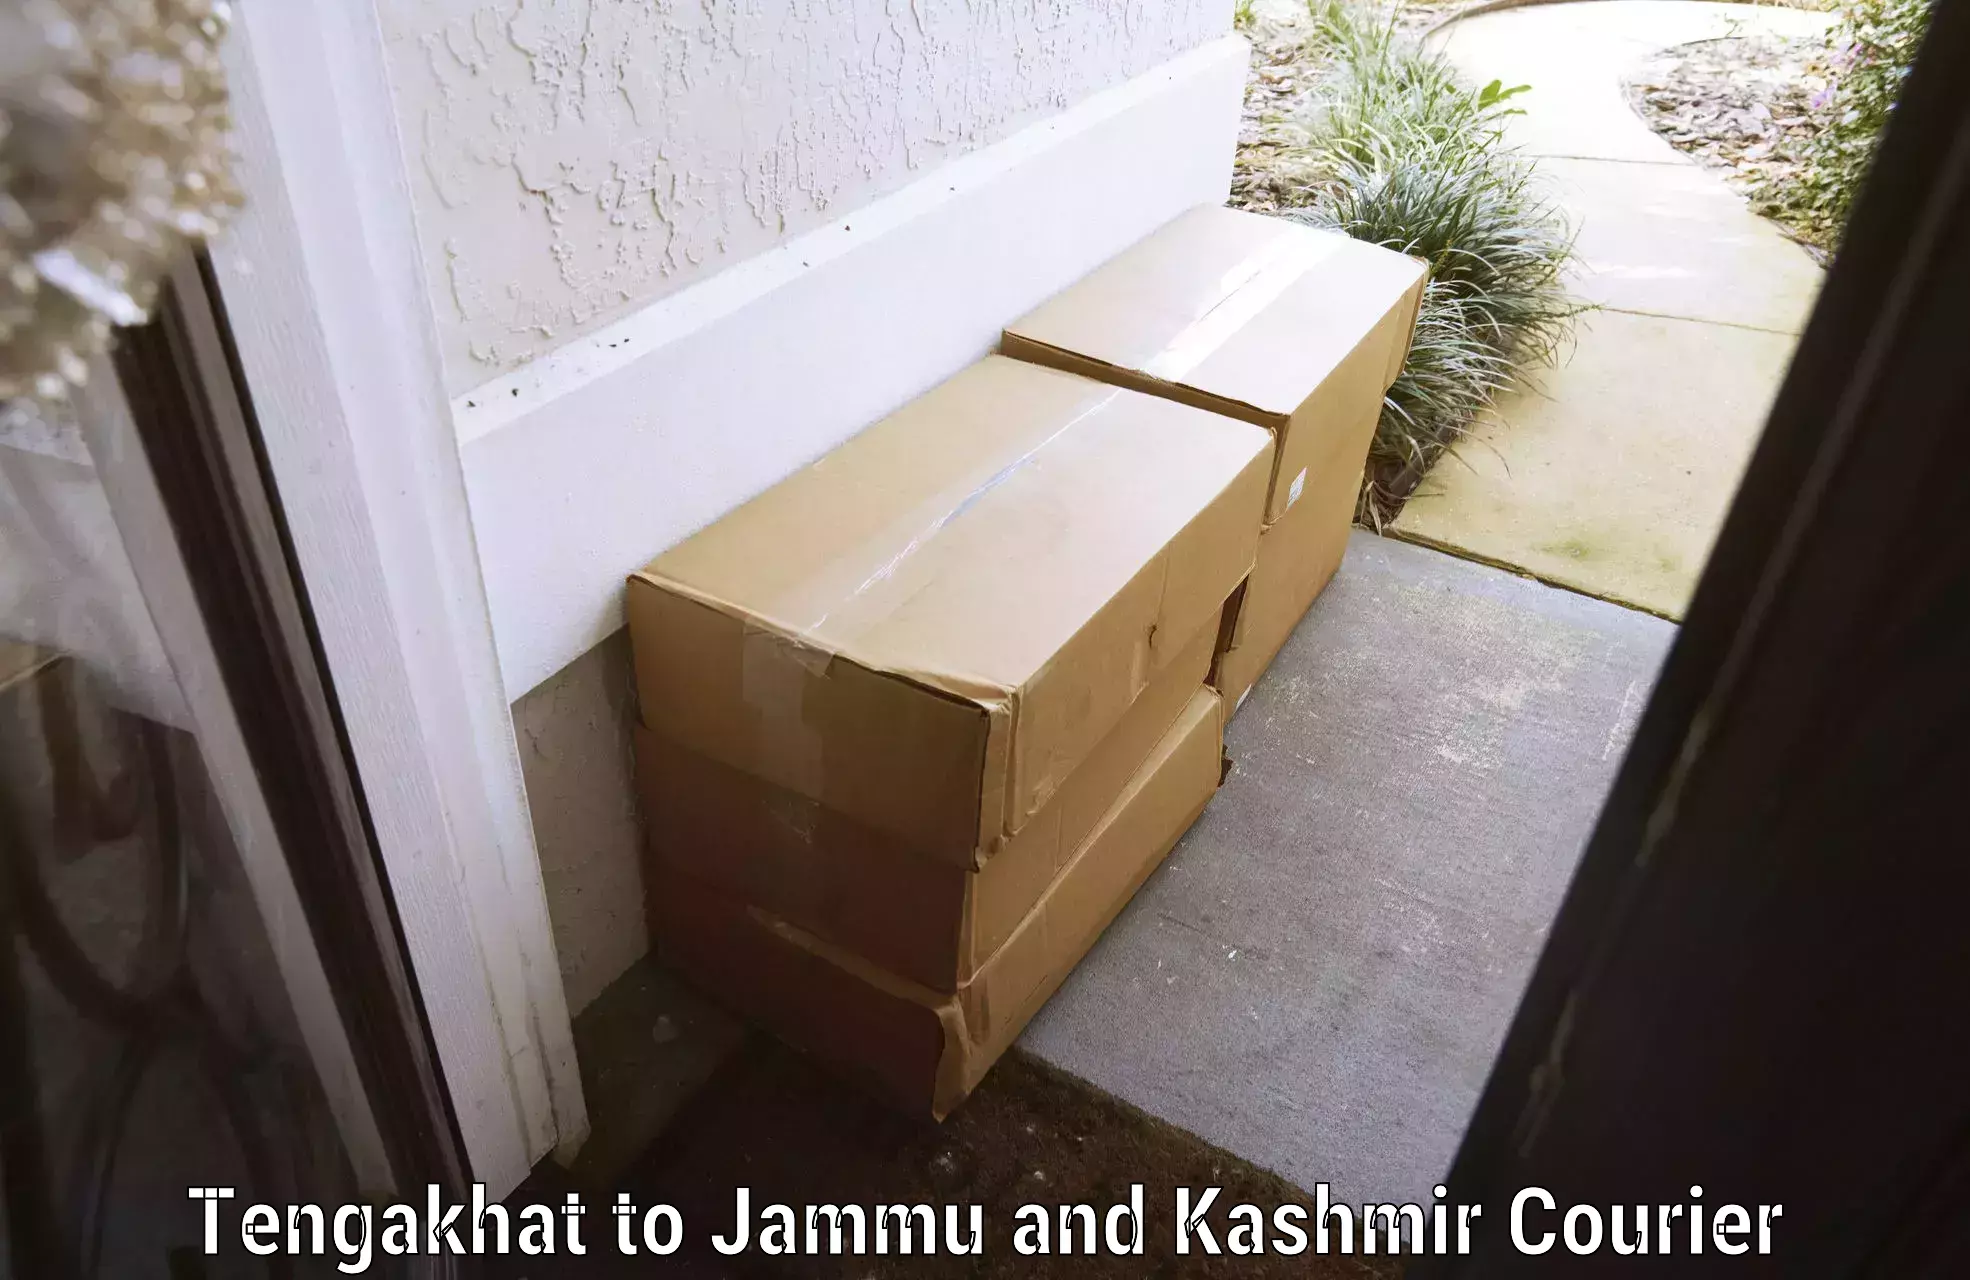 Door-to-door baggage service Tengakhat to University of Jammu